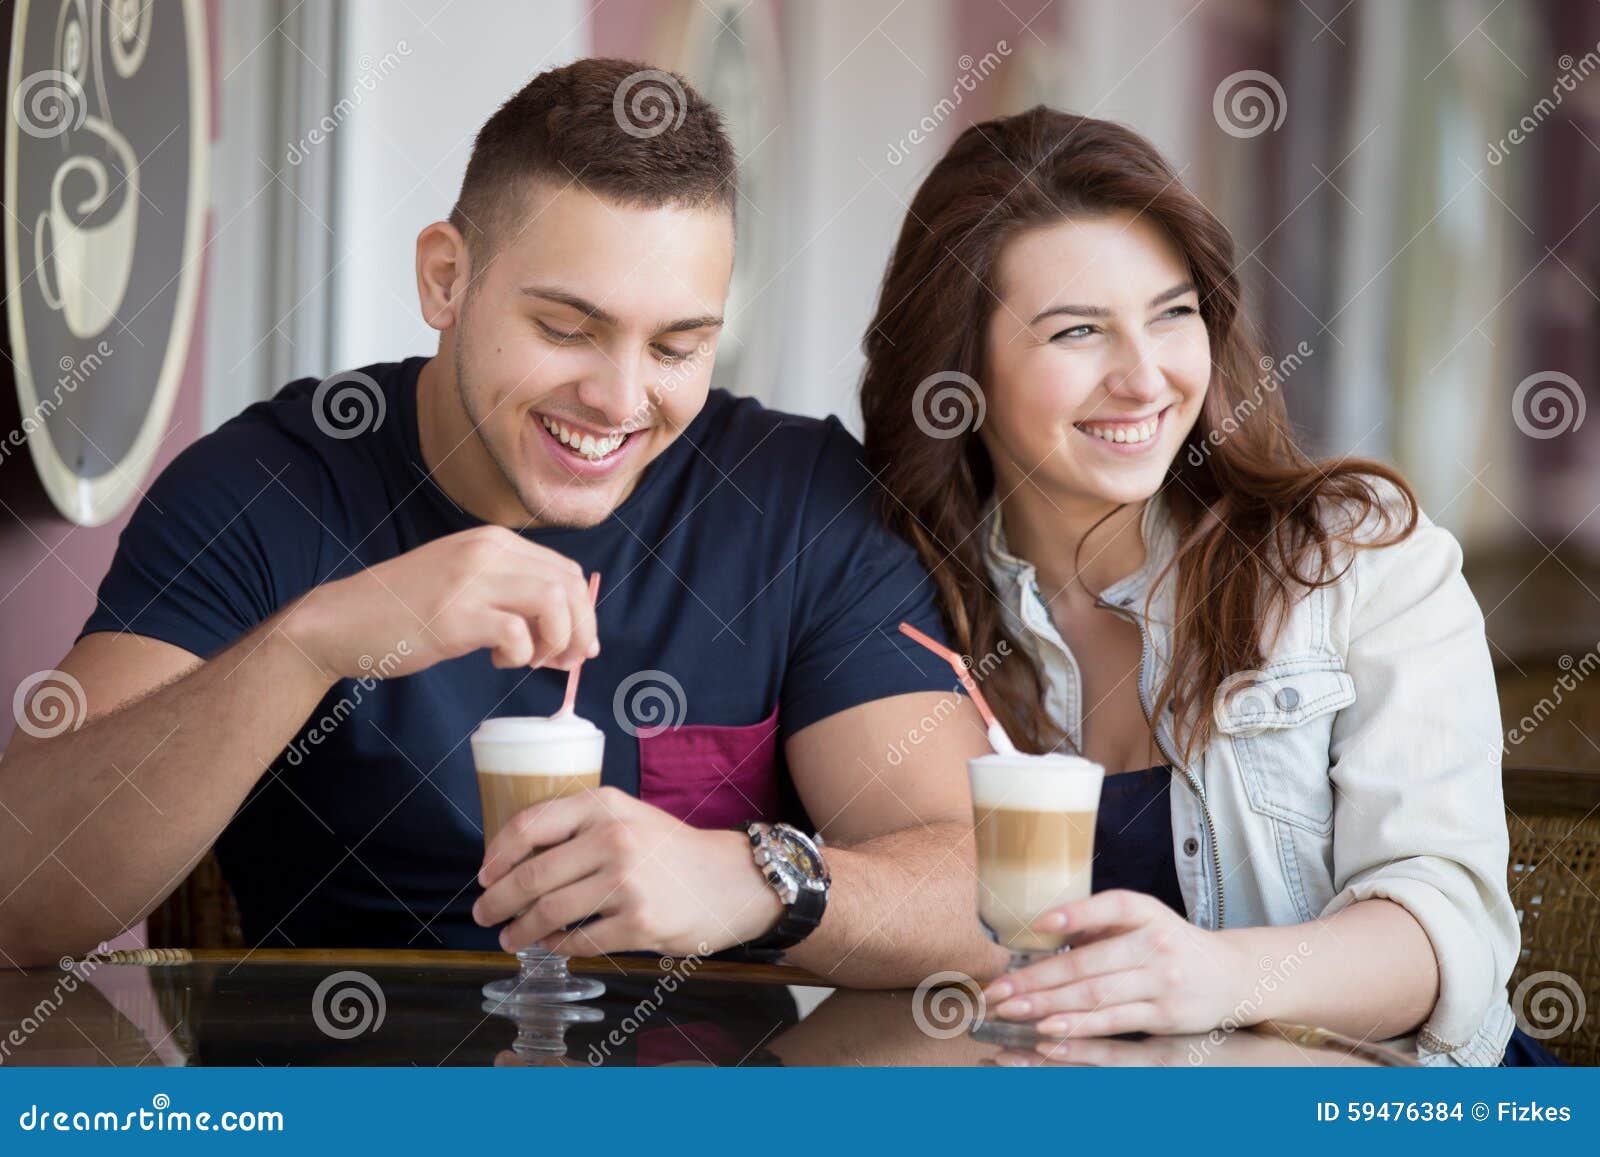 Как сохранить пар. Фотосессия пары в кафе. Семья в кафе. Семья пьет кофе. Фотосессия в кафе парни молодые.